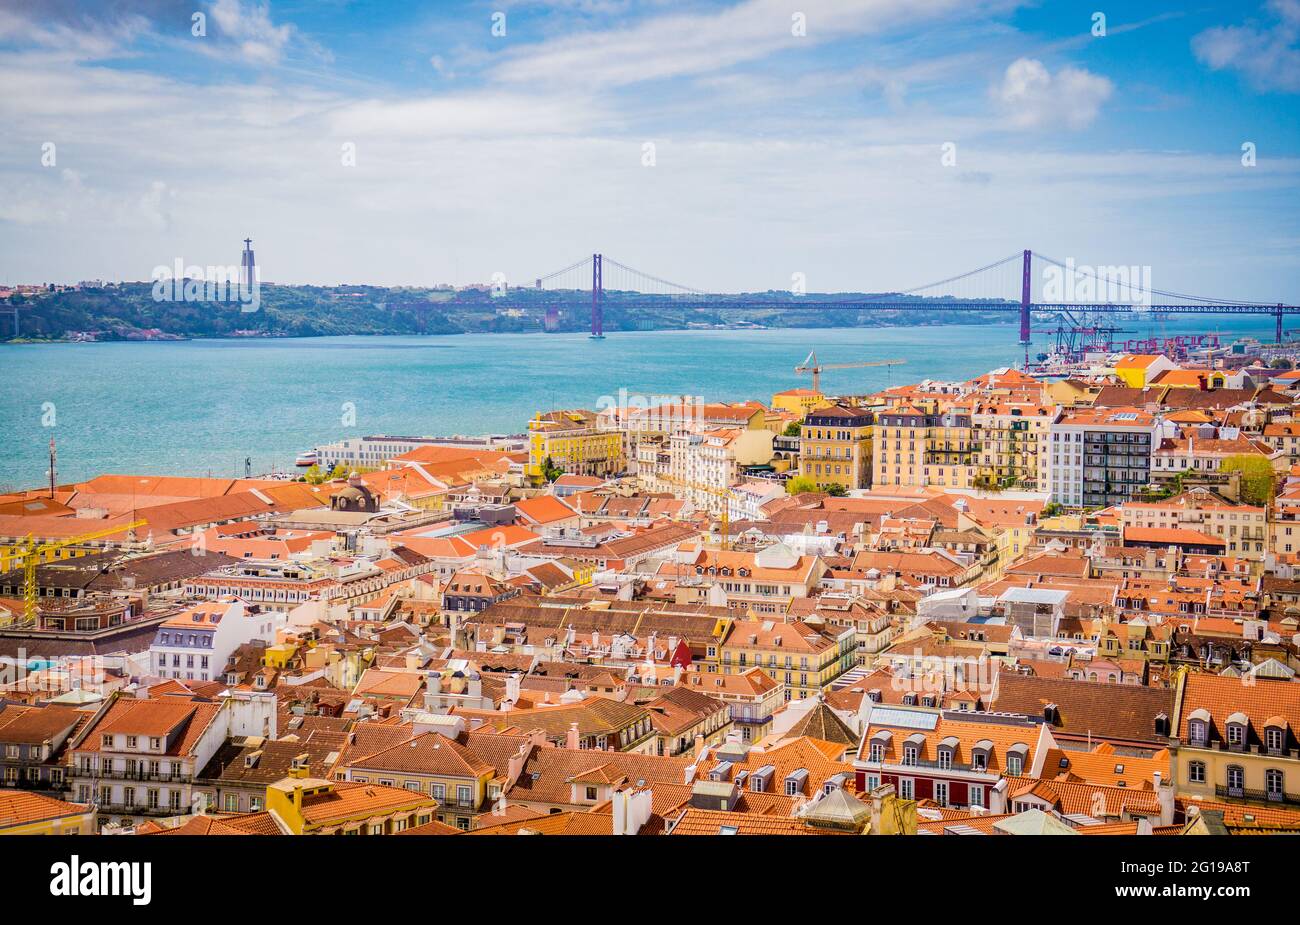 Vista aerea panoramica della vecchia città tradizionale di Lisbona con tetti arancioni e il Ponte del 25 aprile dal Castello di Sao Jorge, Portogallo. Foto Stock